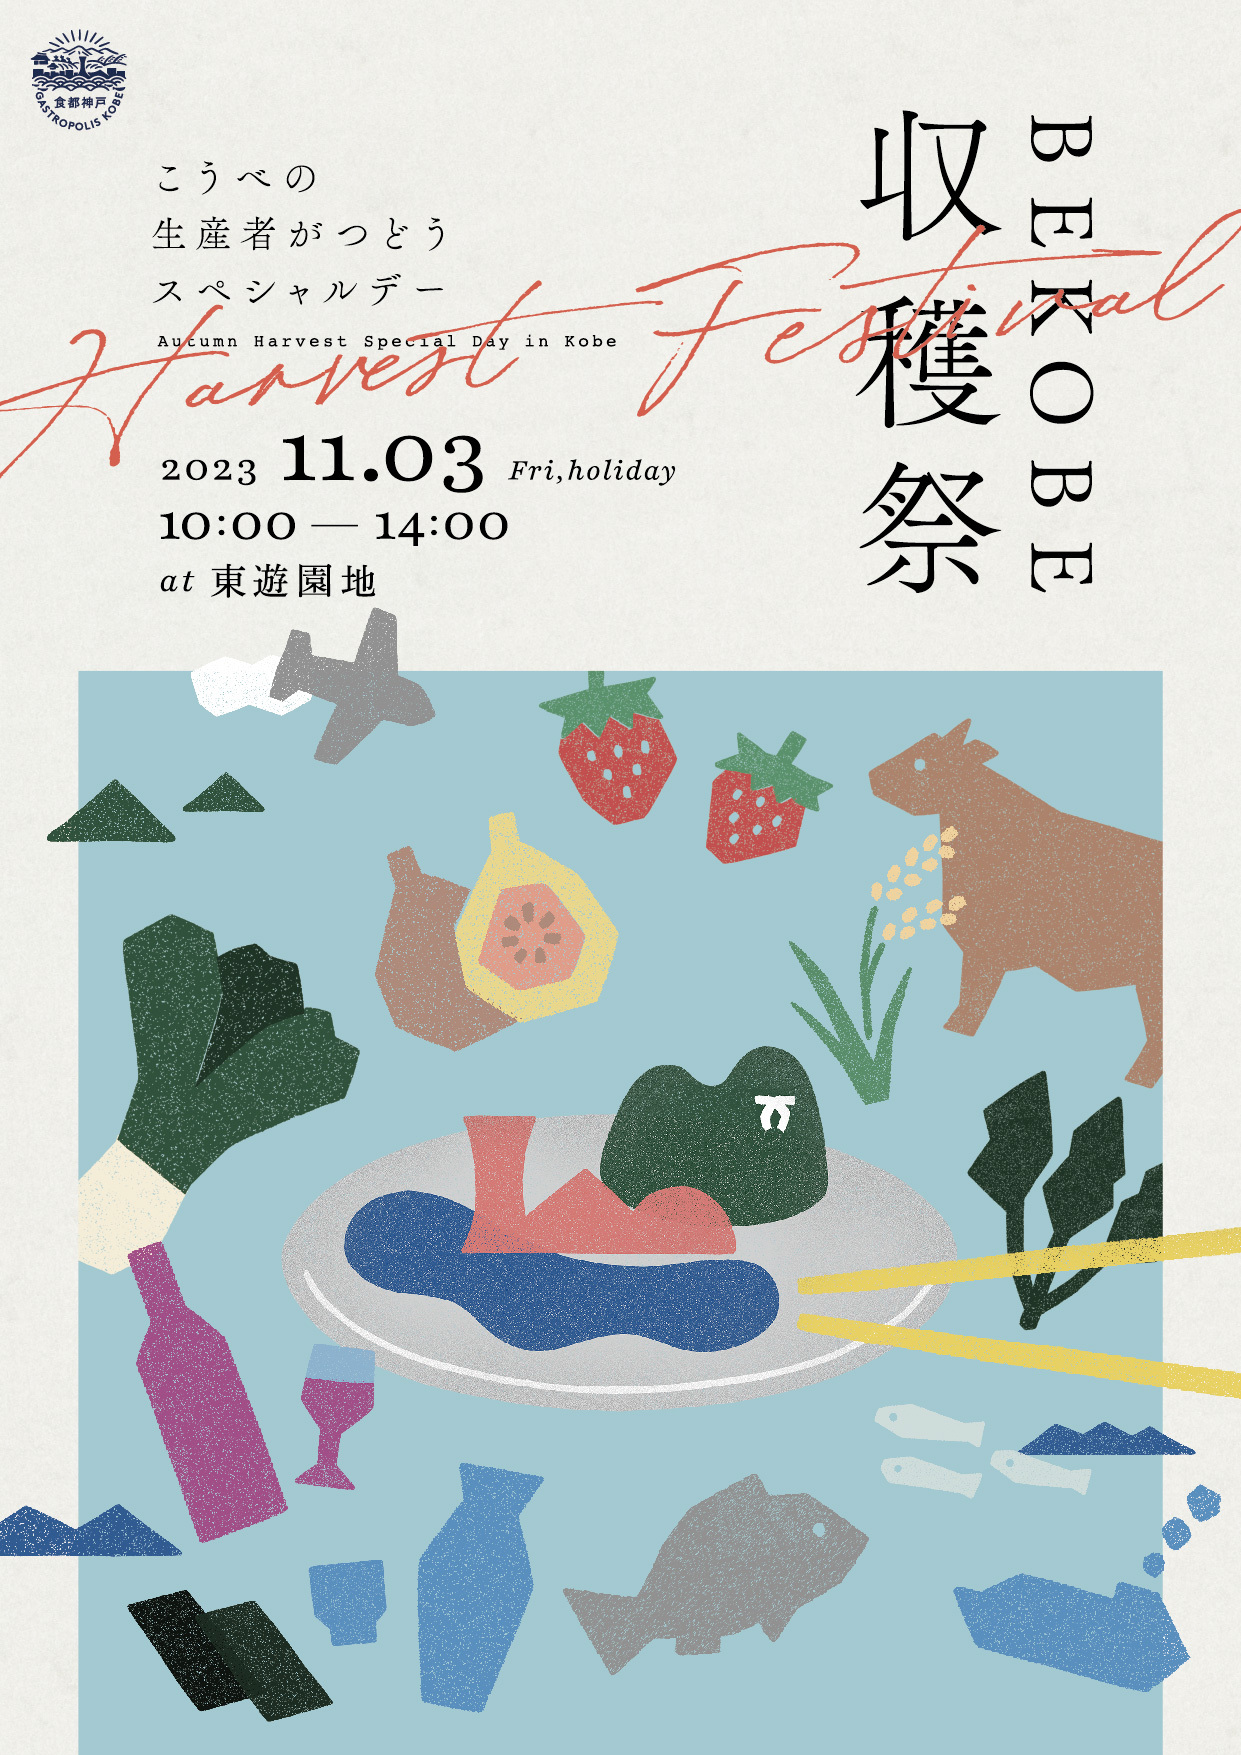 神戸市で開催される BE KOBE 収穫祭